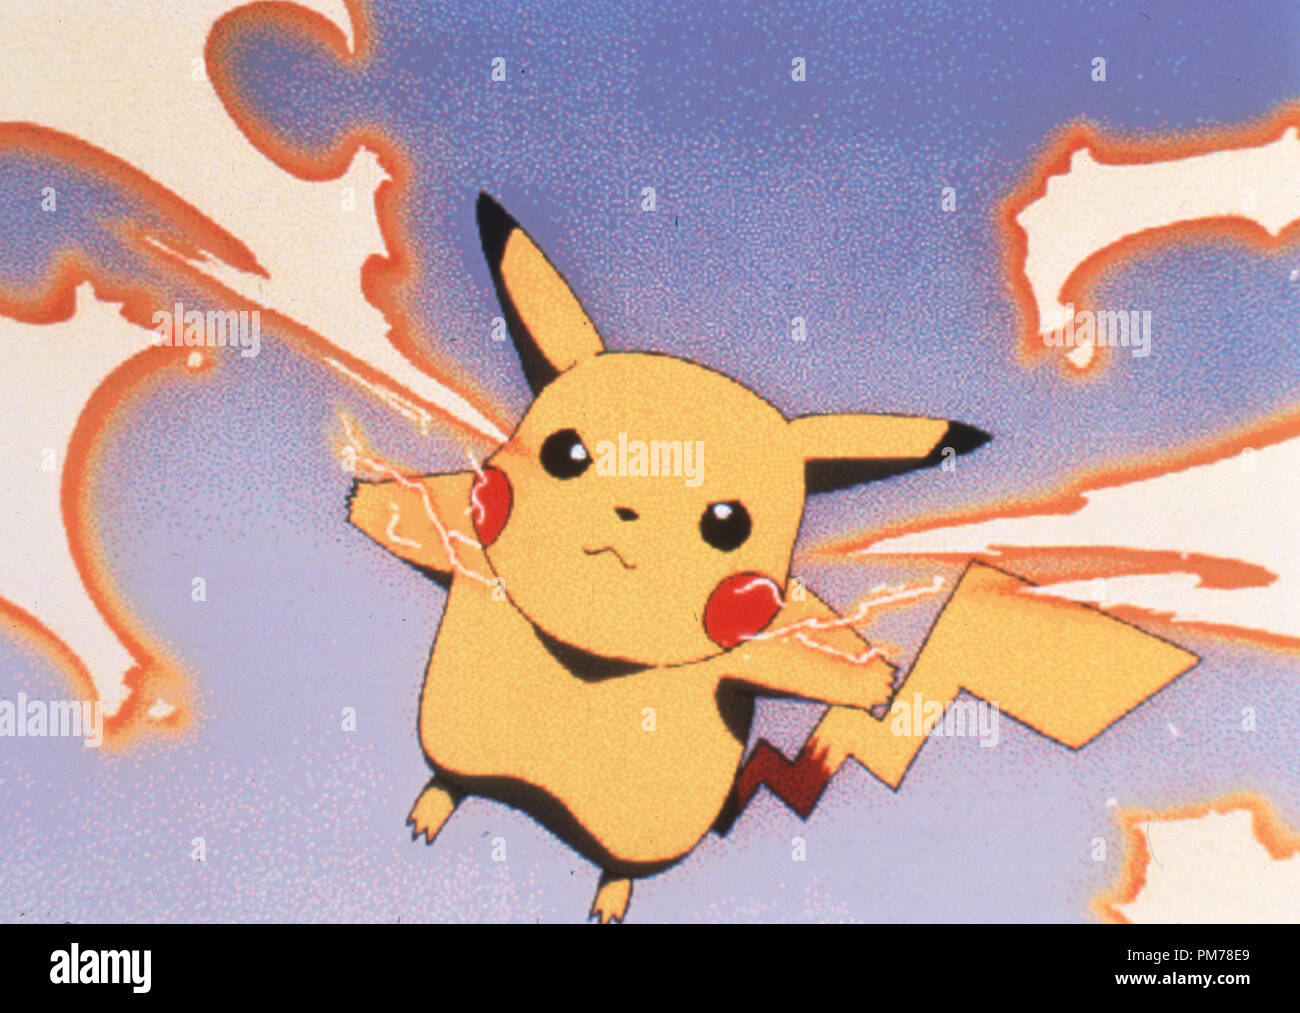 Photo du film de 'Pokemon' Pikachu © 1998 Warner Bros. Référence #  30996310THA pour un usage éditorial uniquement - Tous droits réservés Banque D'Images